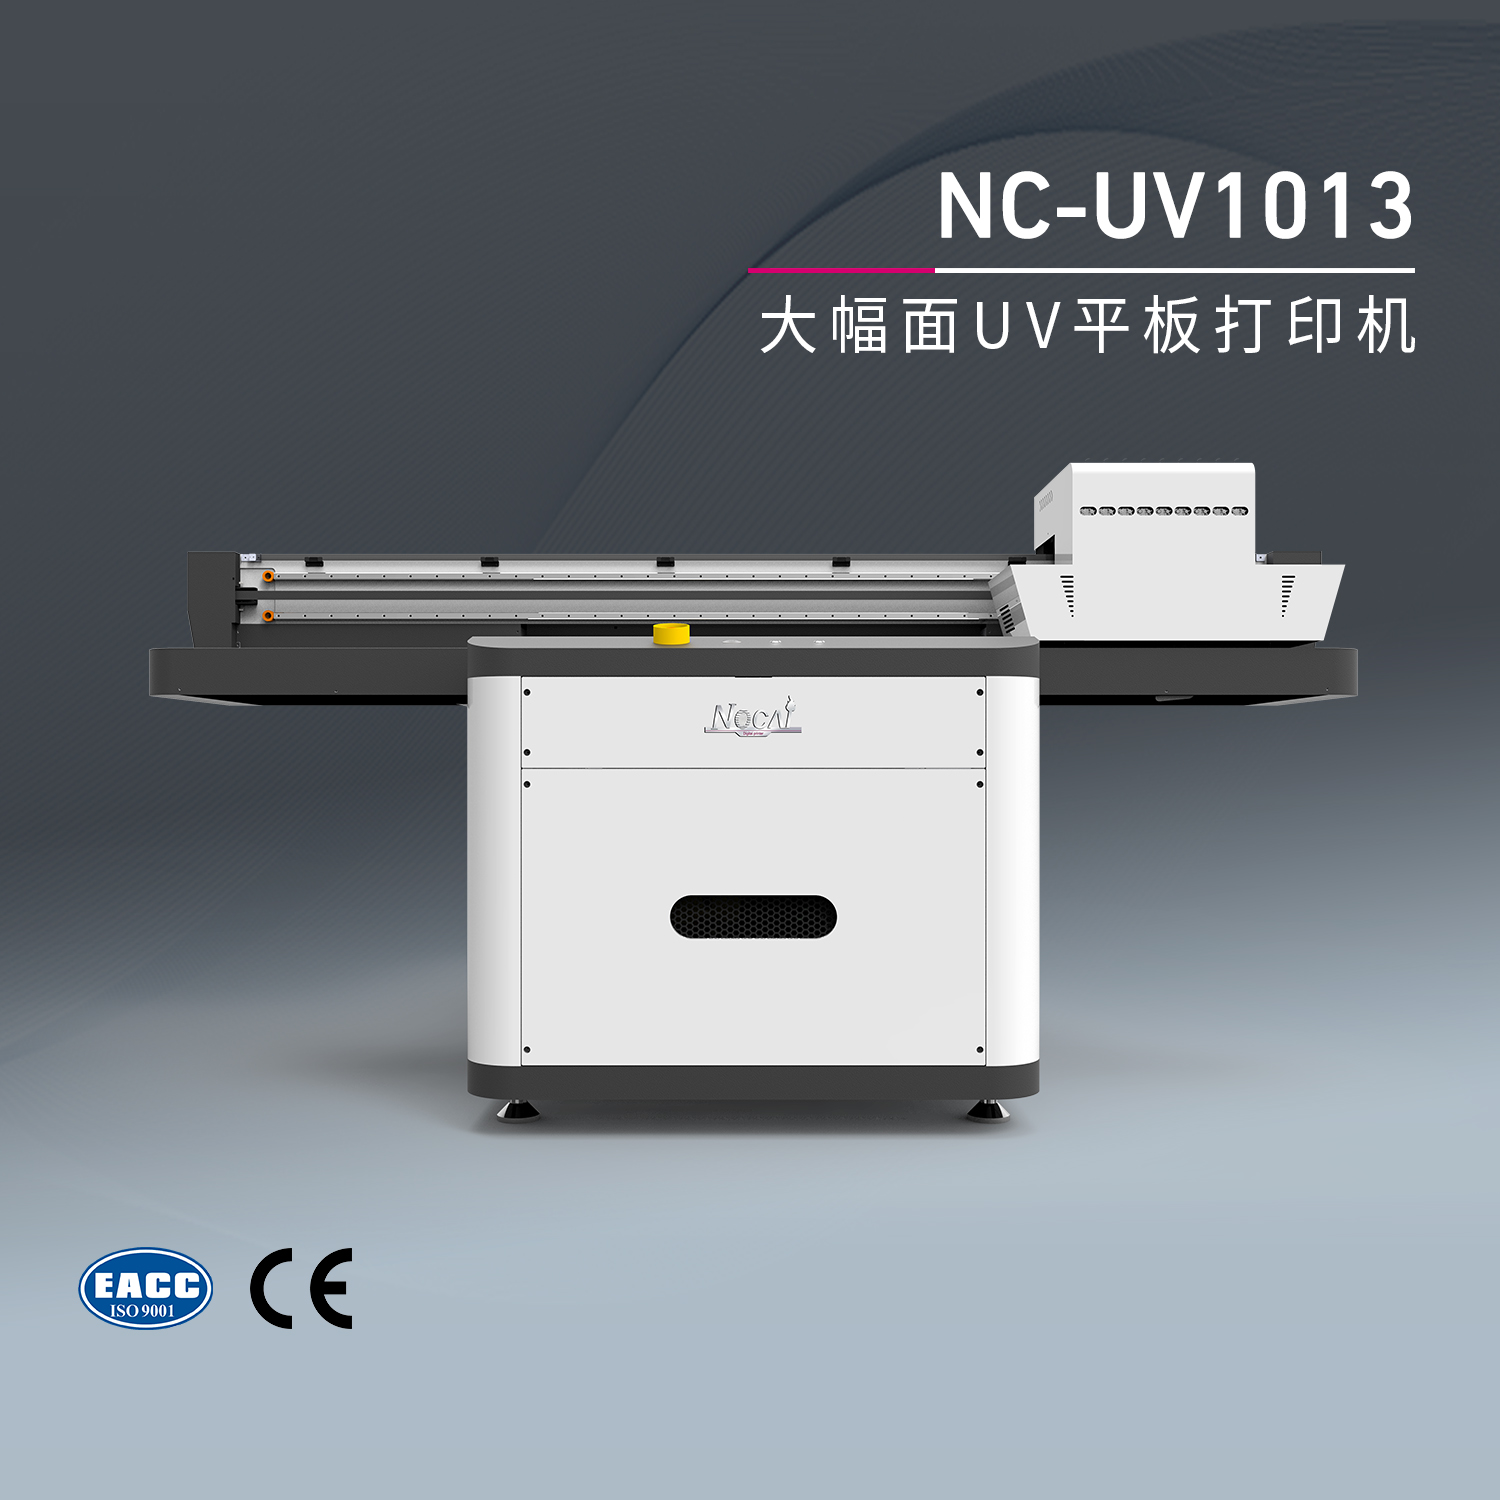 NC-UV1013-UV平板打印机